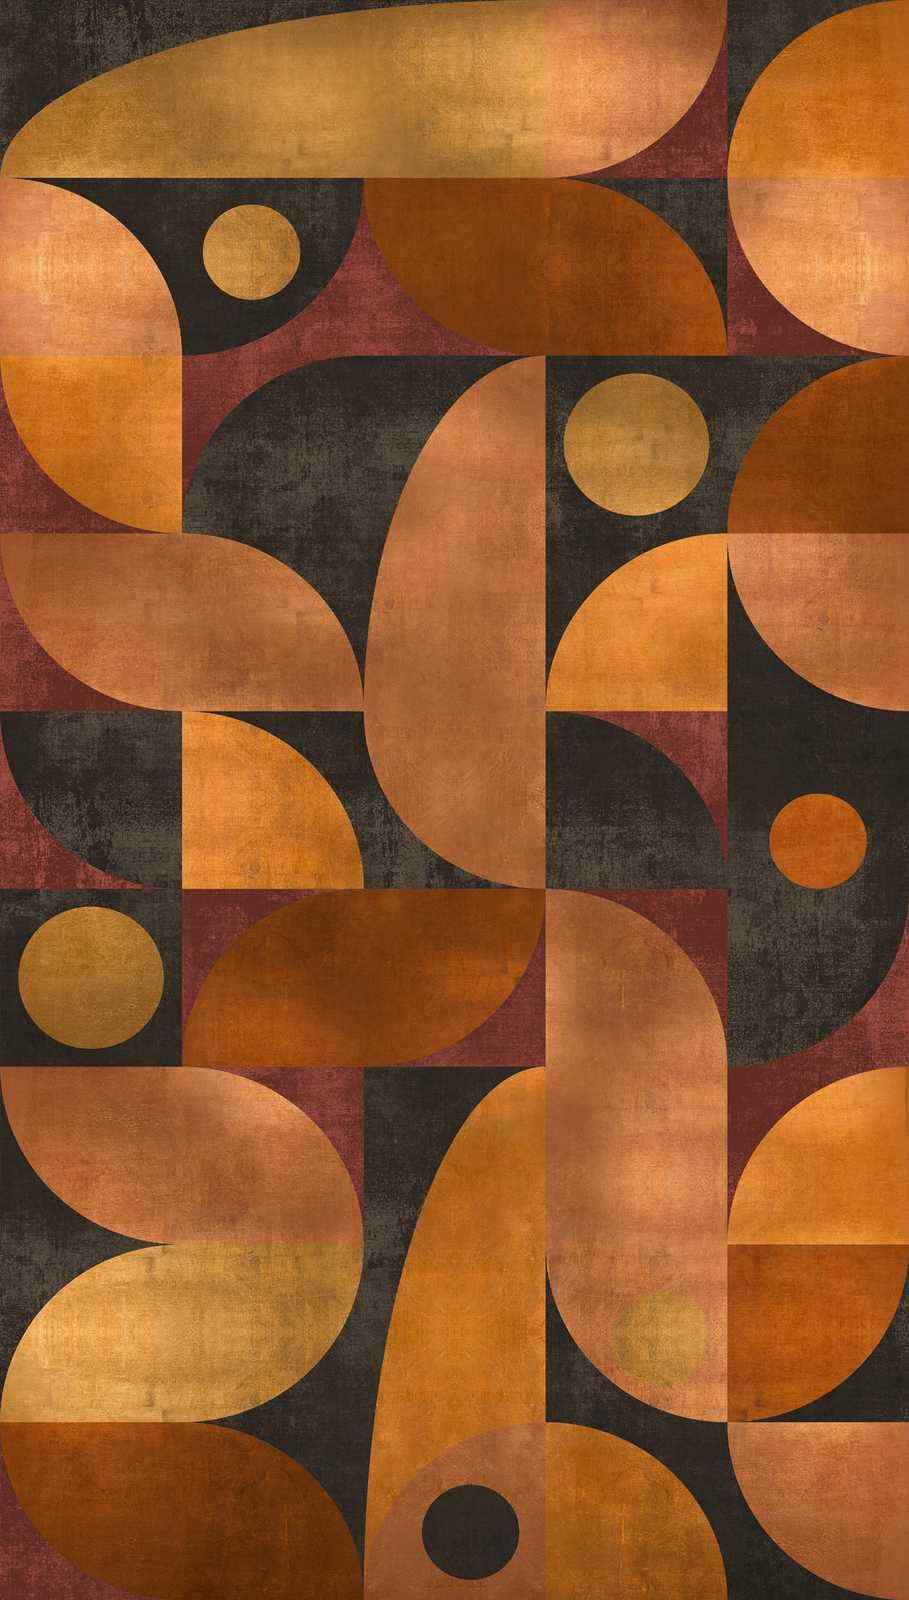             Vliesbehang in warme tinten met grafisch rond patroon - oranje, bruin, rood
        